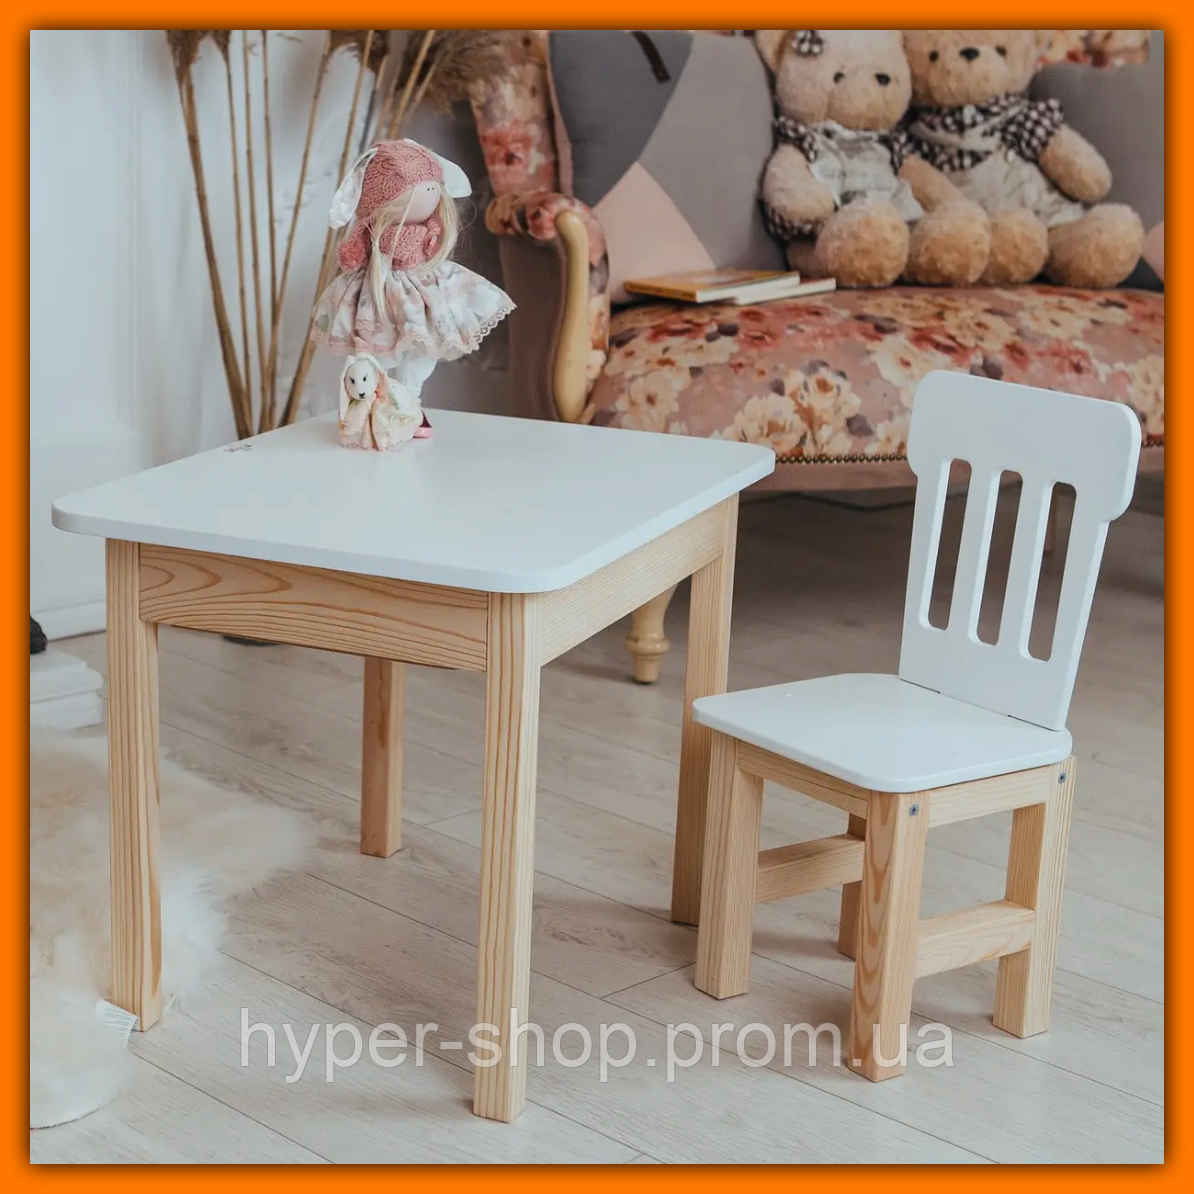 Дитячий столик і стільчик для занять та ігор, комплект дерев'яний білий столик із нішею та стільчик для малюків